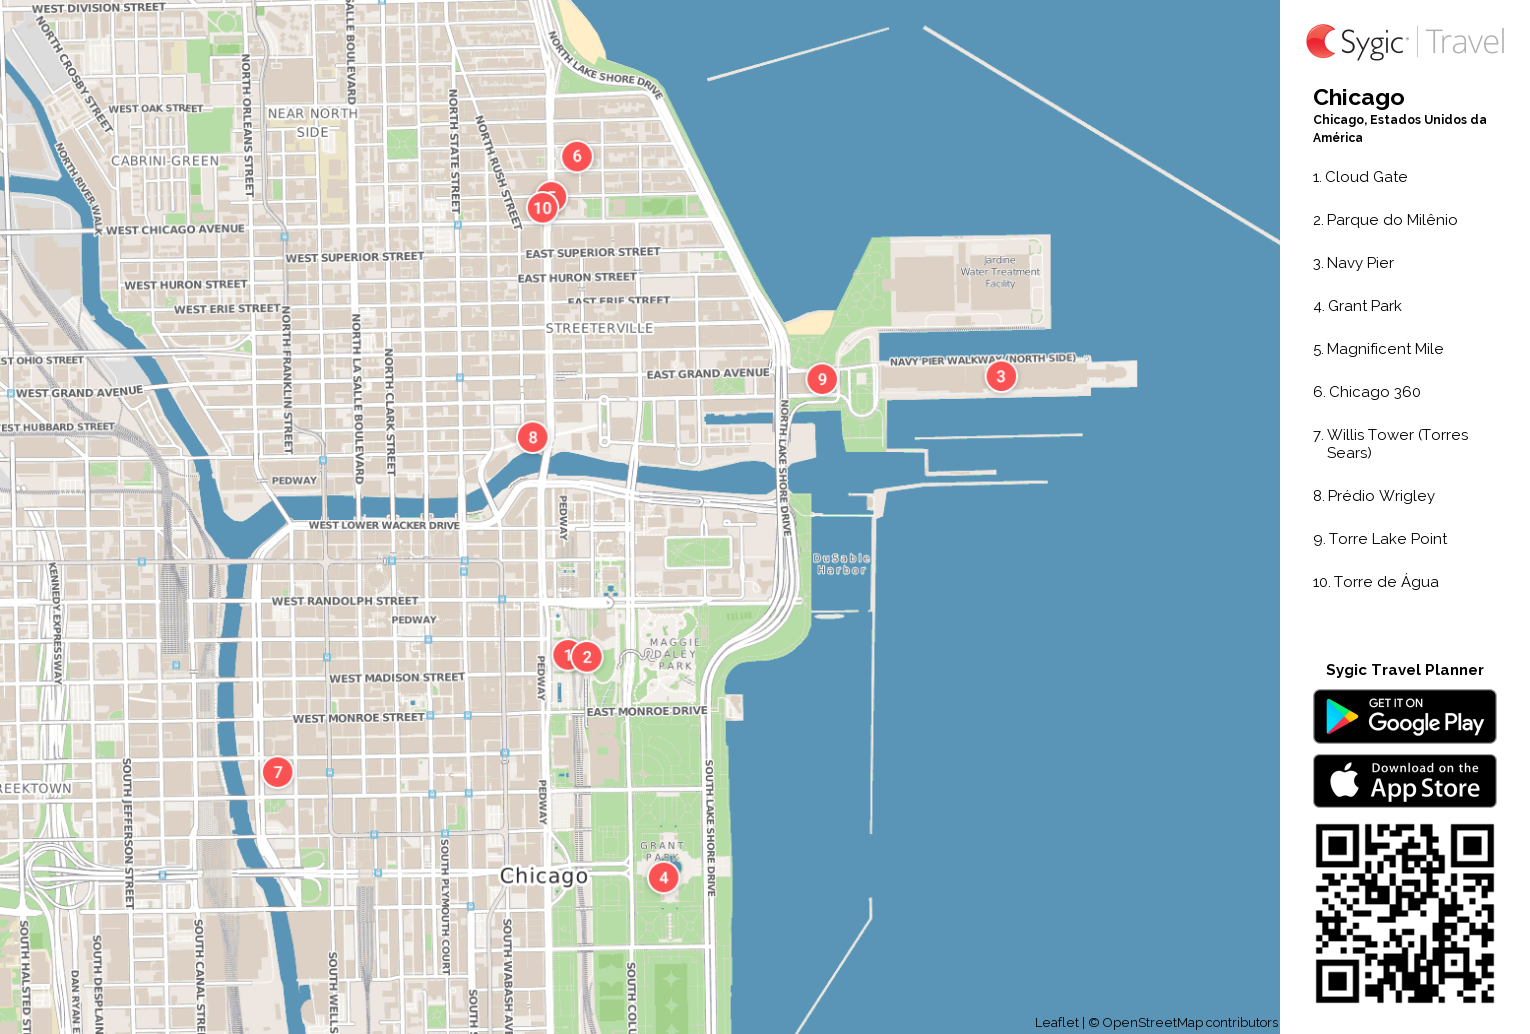 chicago-mapa-turistico-em-pdf